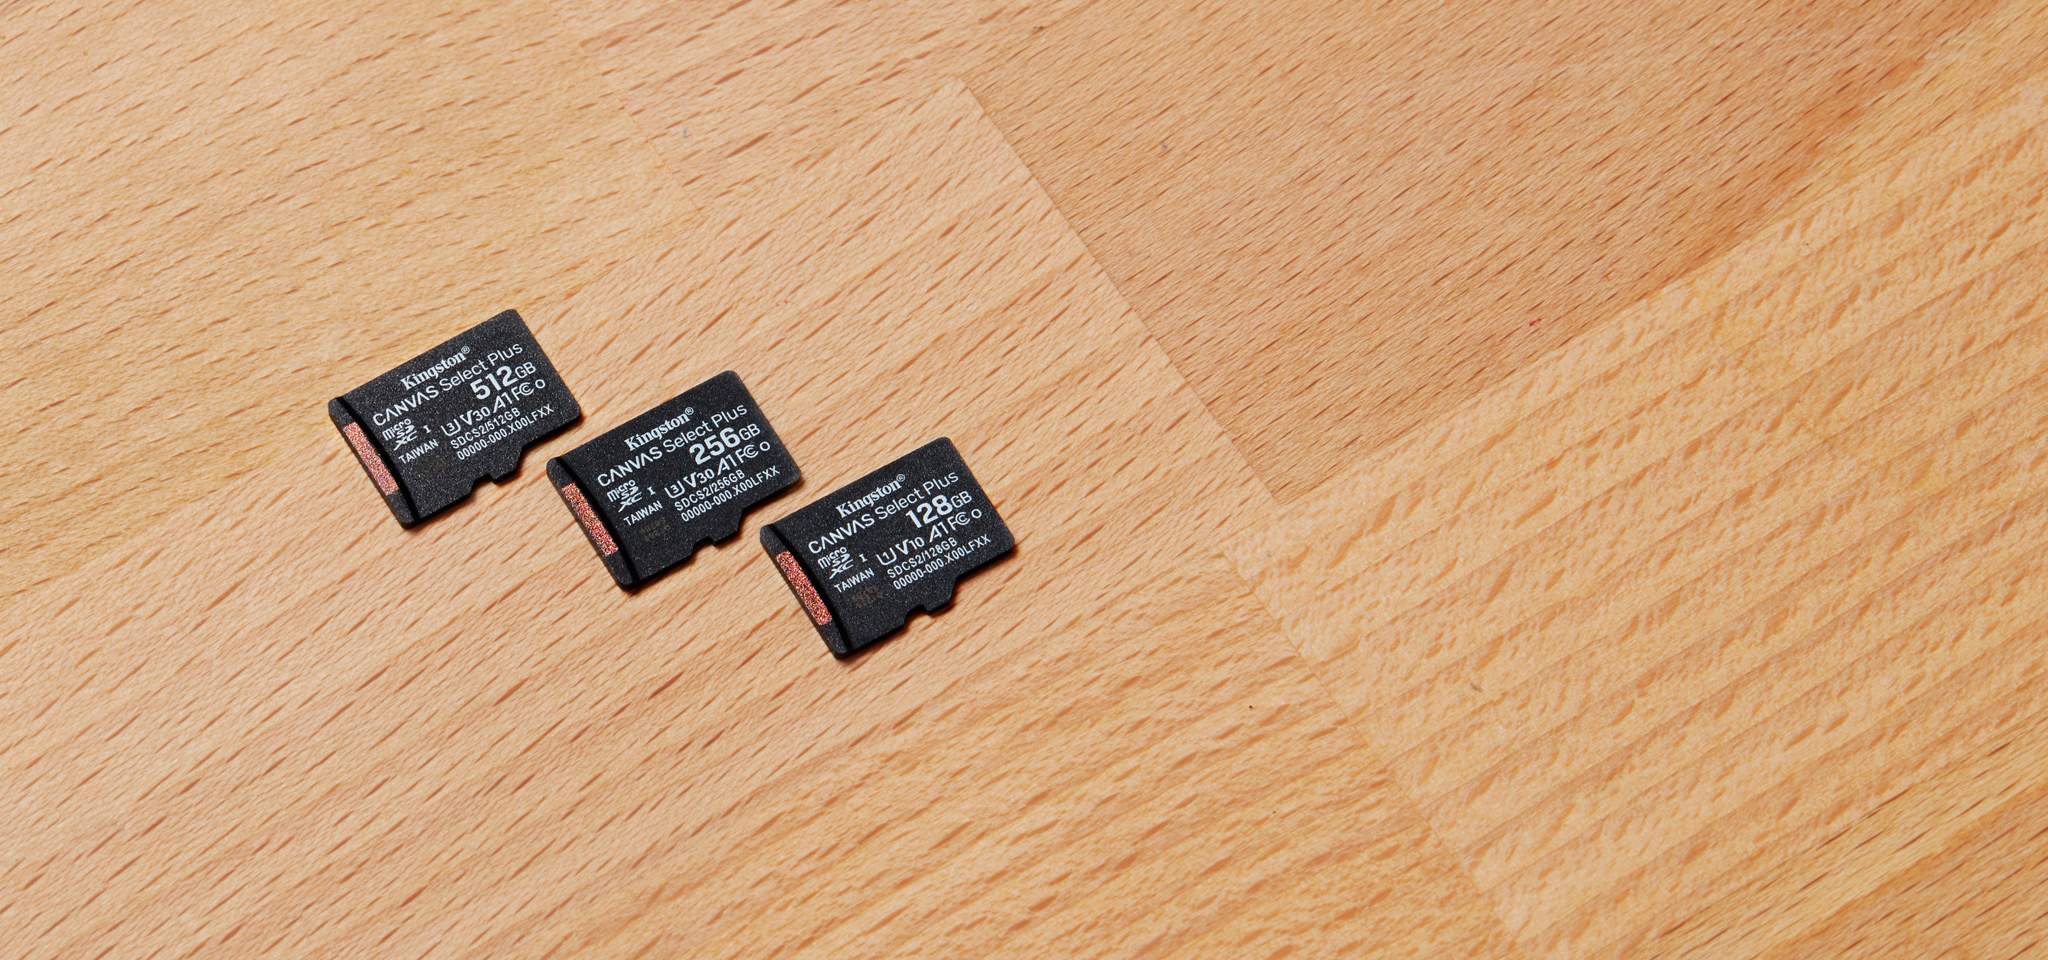 Tre schede Canvas Select Plus microSD, ognuna di diversa capacità, su una scrivania in legno